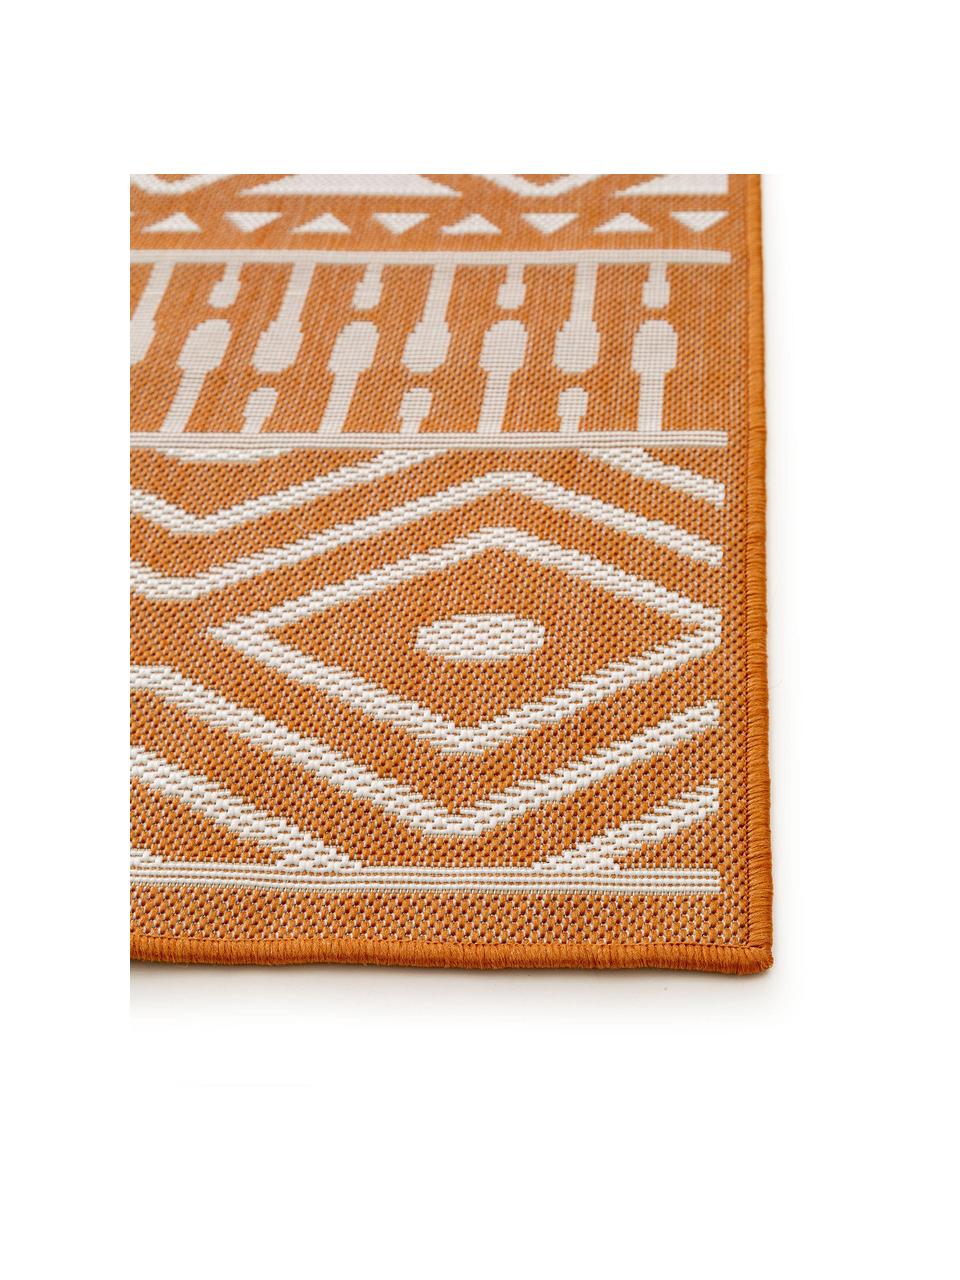 In- & Outdoor-Teppich Nillo mit Ethnomuster, 100% Polyethylen, Orange, Creme, B 120 x L 170 cm (Größe S)